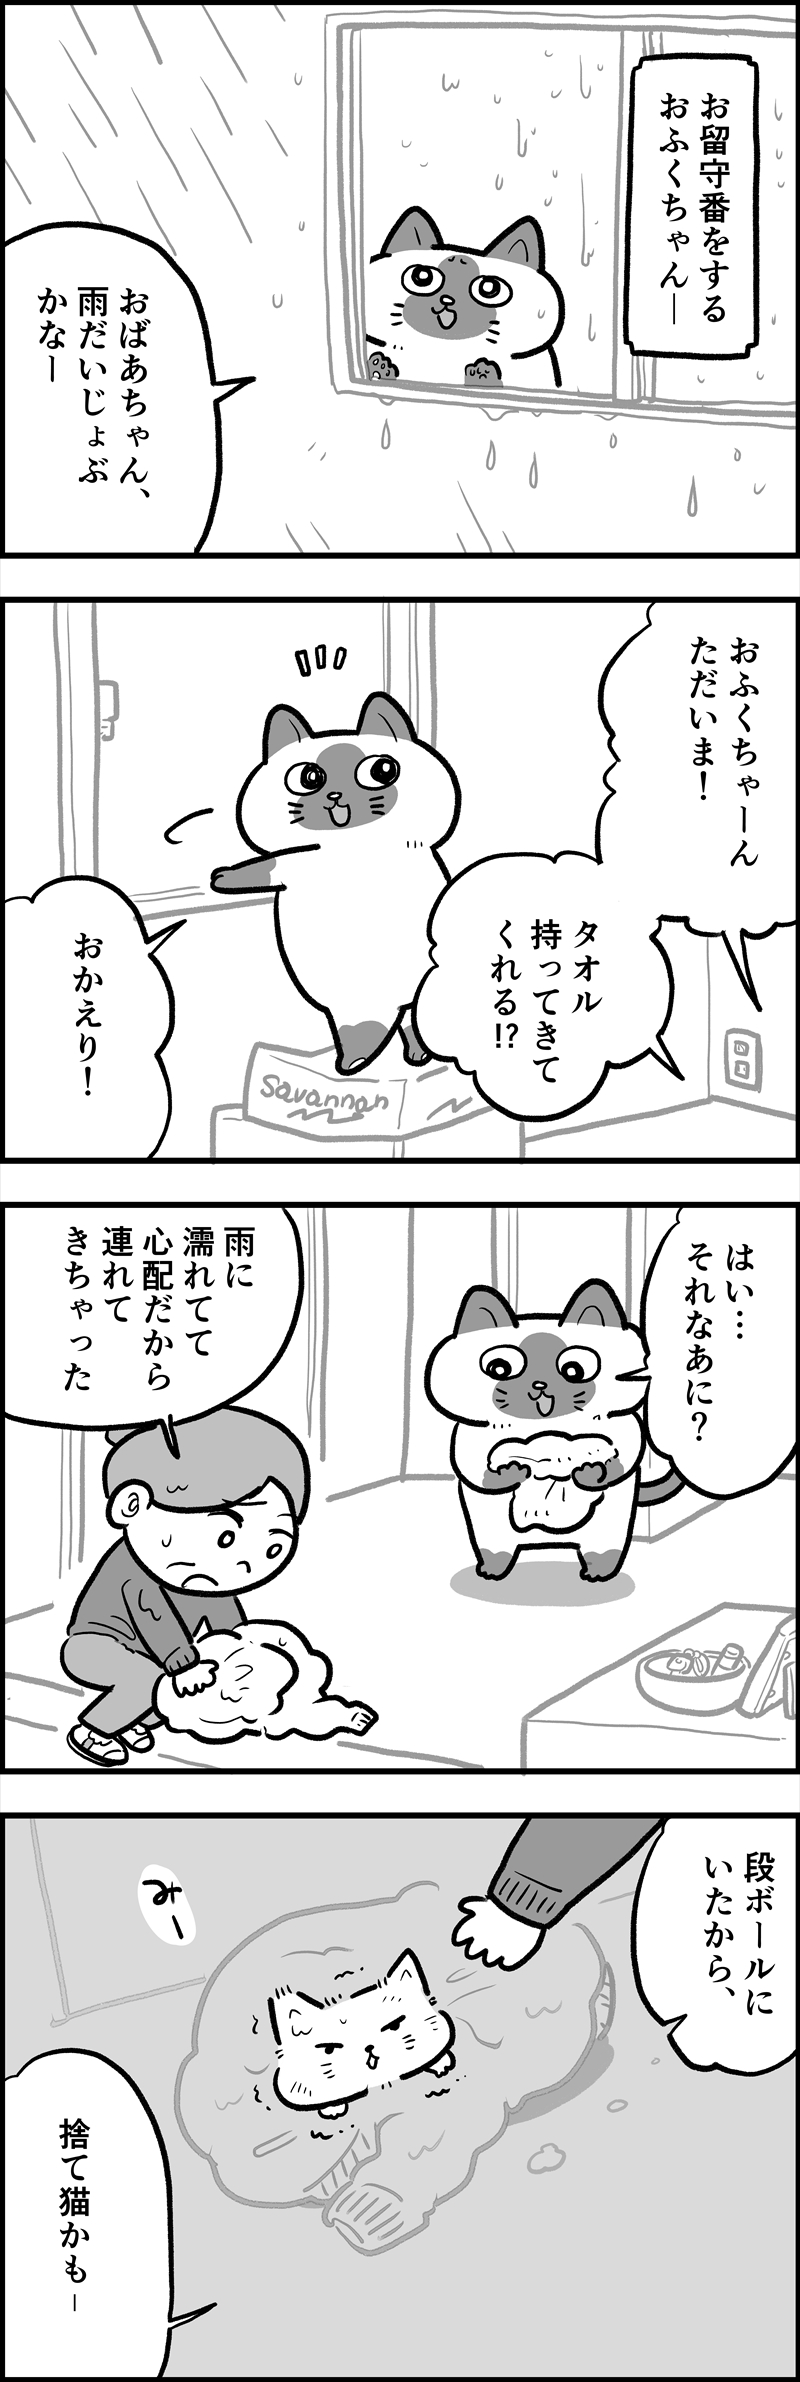 ofukuchan_manga_24_R.jpg